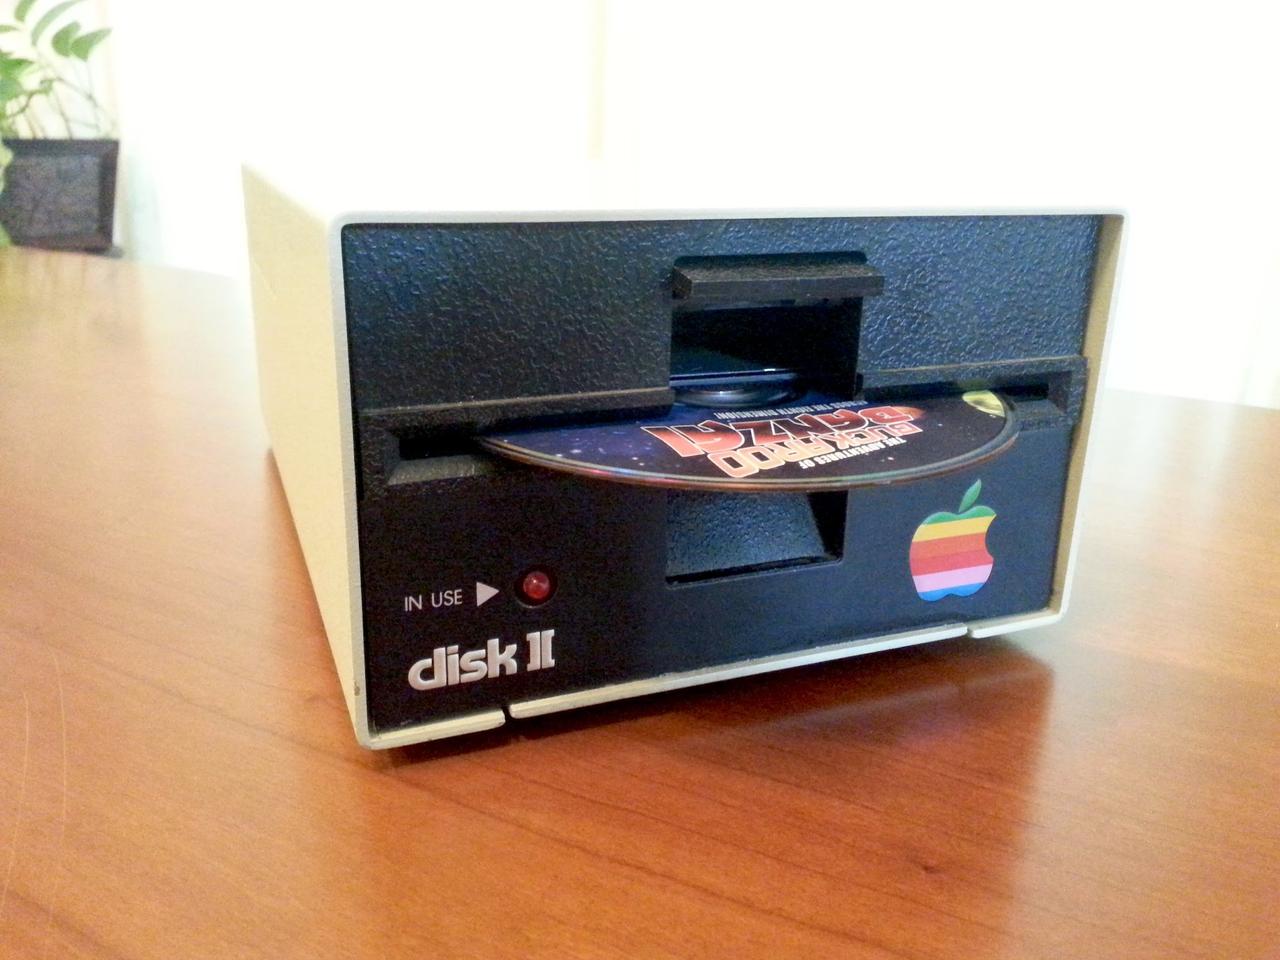 40年前のApple Disk Ⅱ型のディスクドライブが可愛くて実用的で欲しくなる